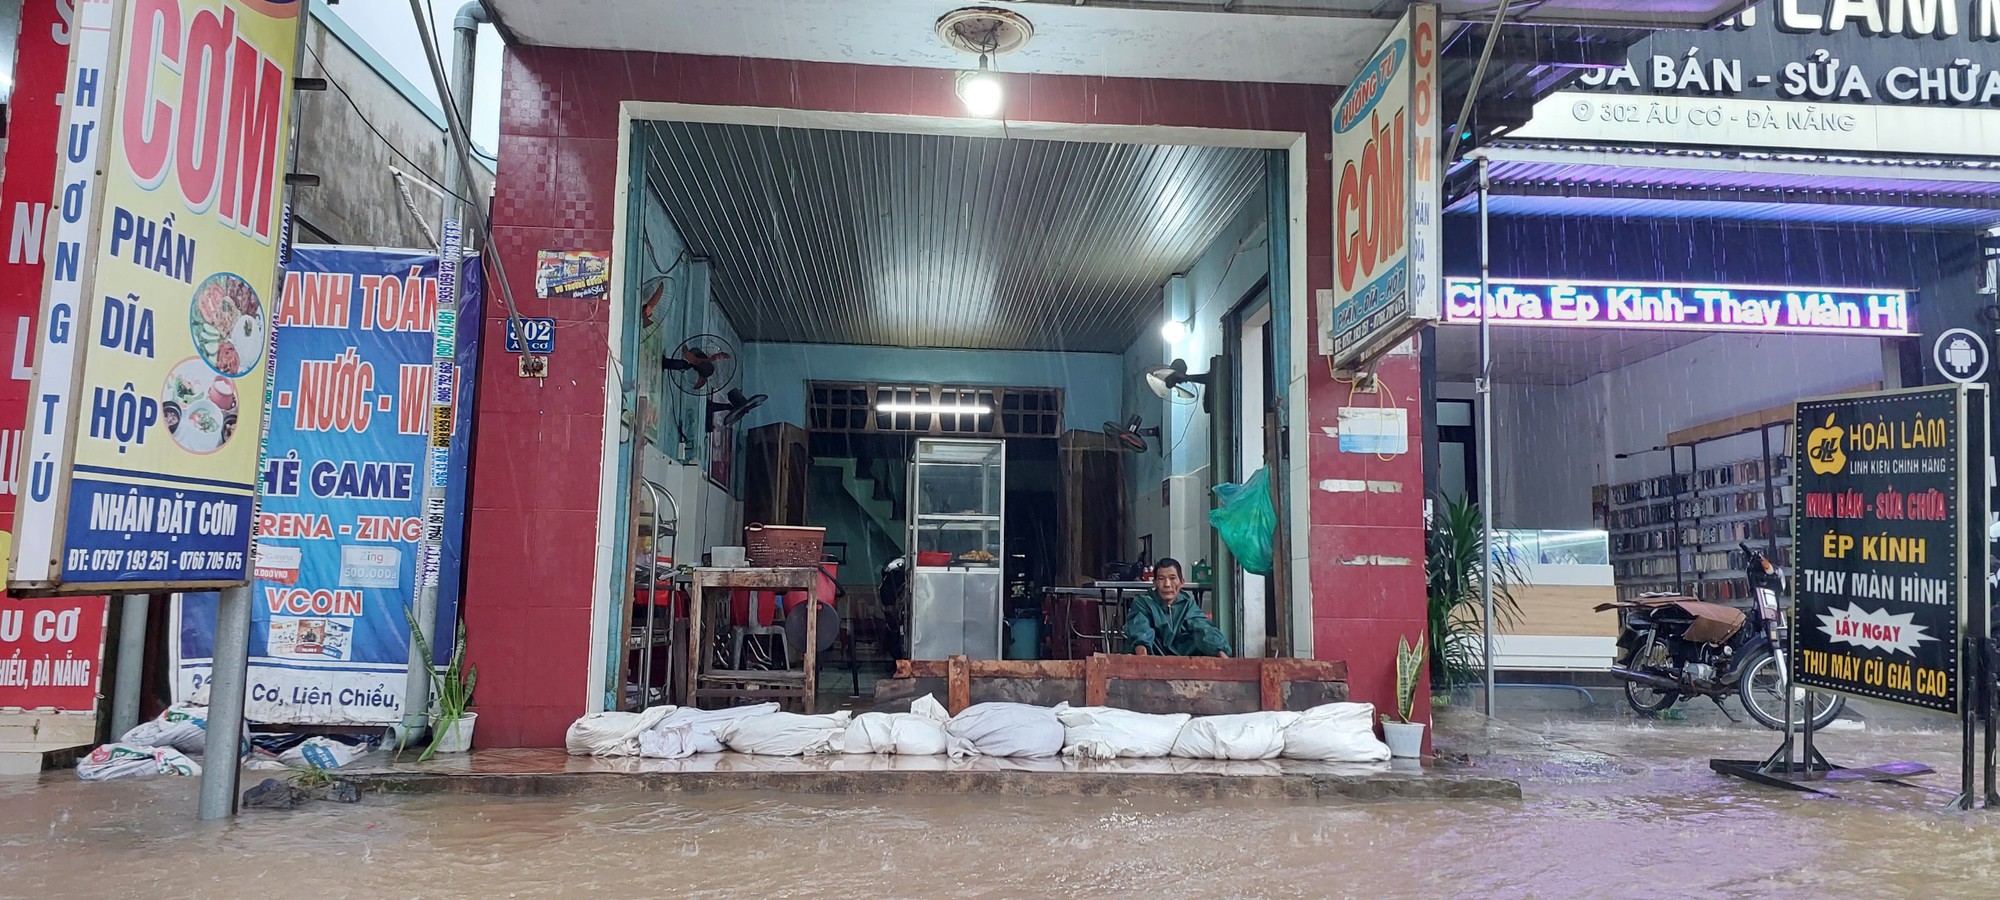 Đường phố Đà Nẵng lại ngập sau mưa lớn, ô tô, xe máy bì bõm lội nước - Ảnh 9.